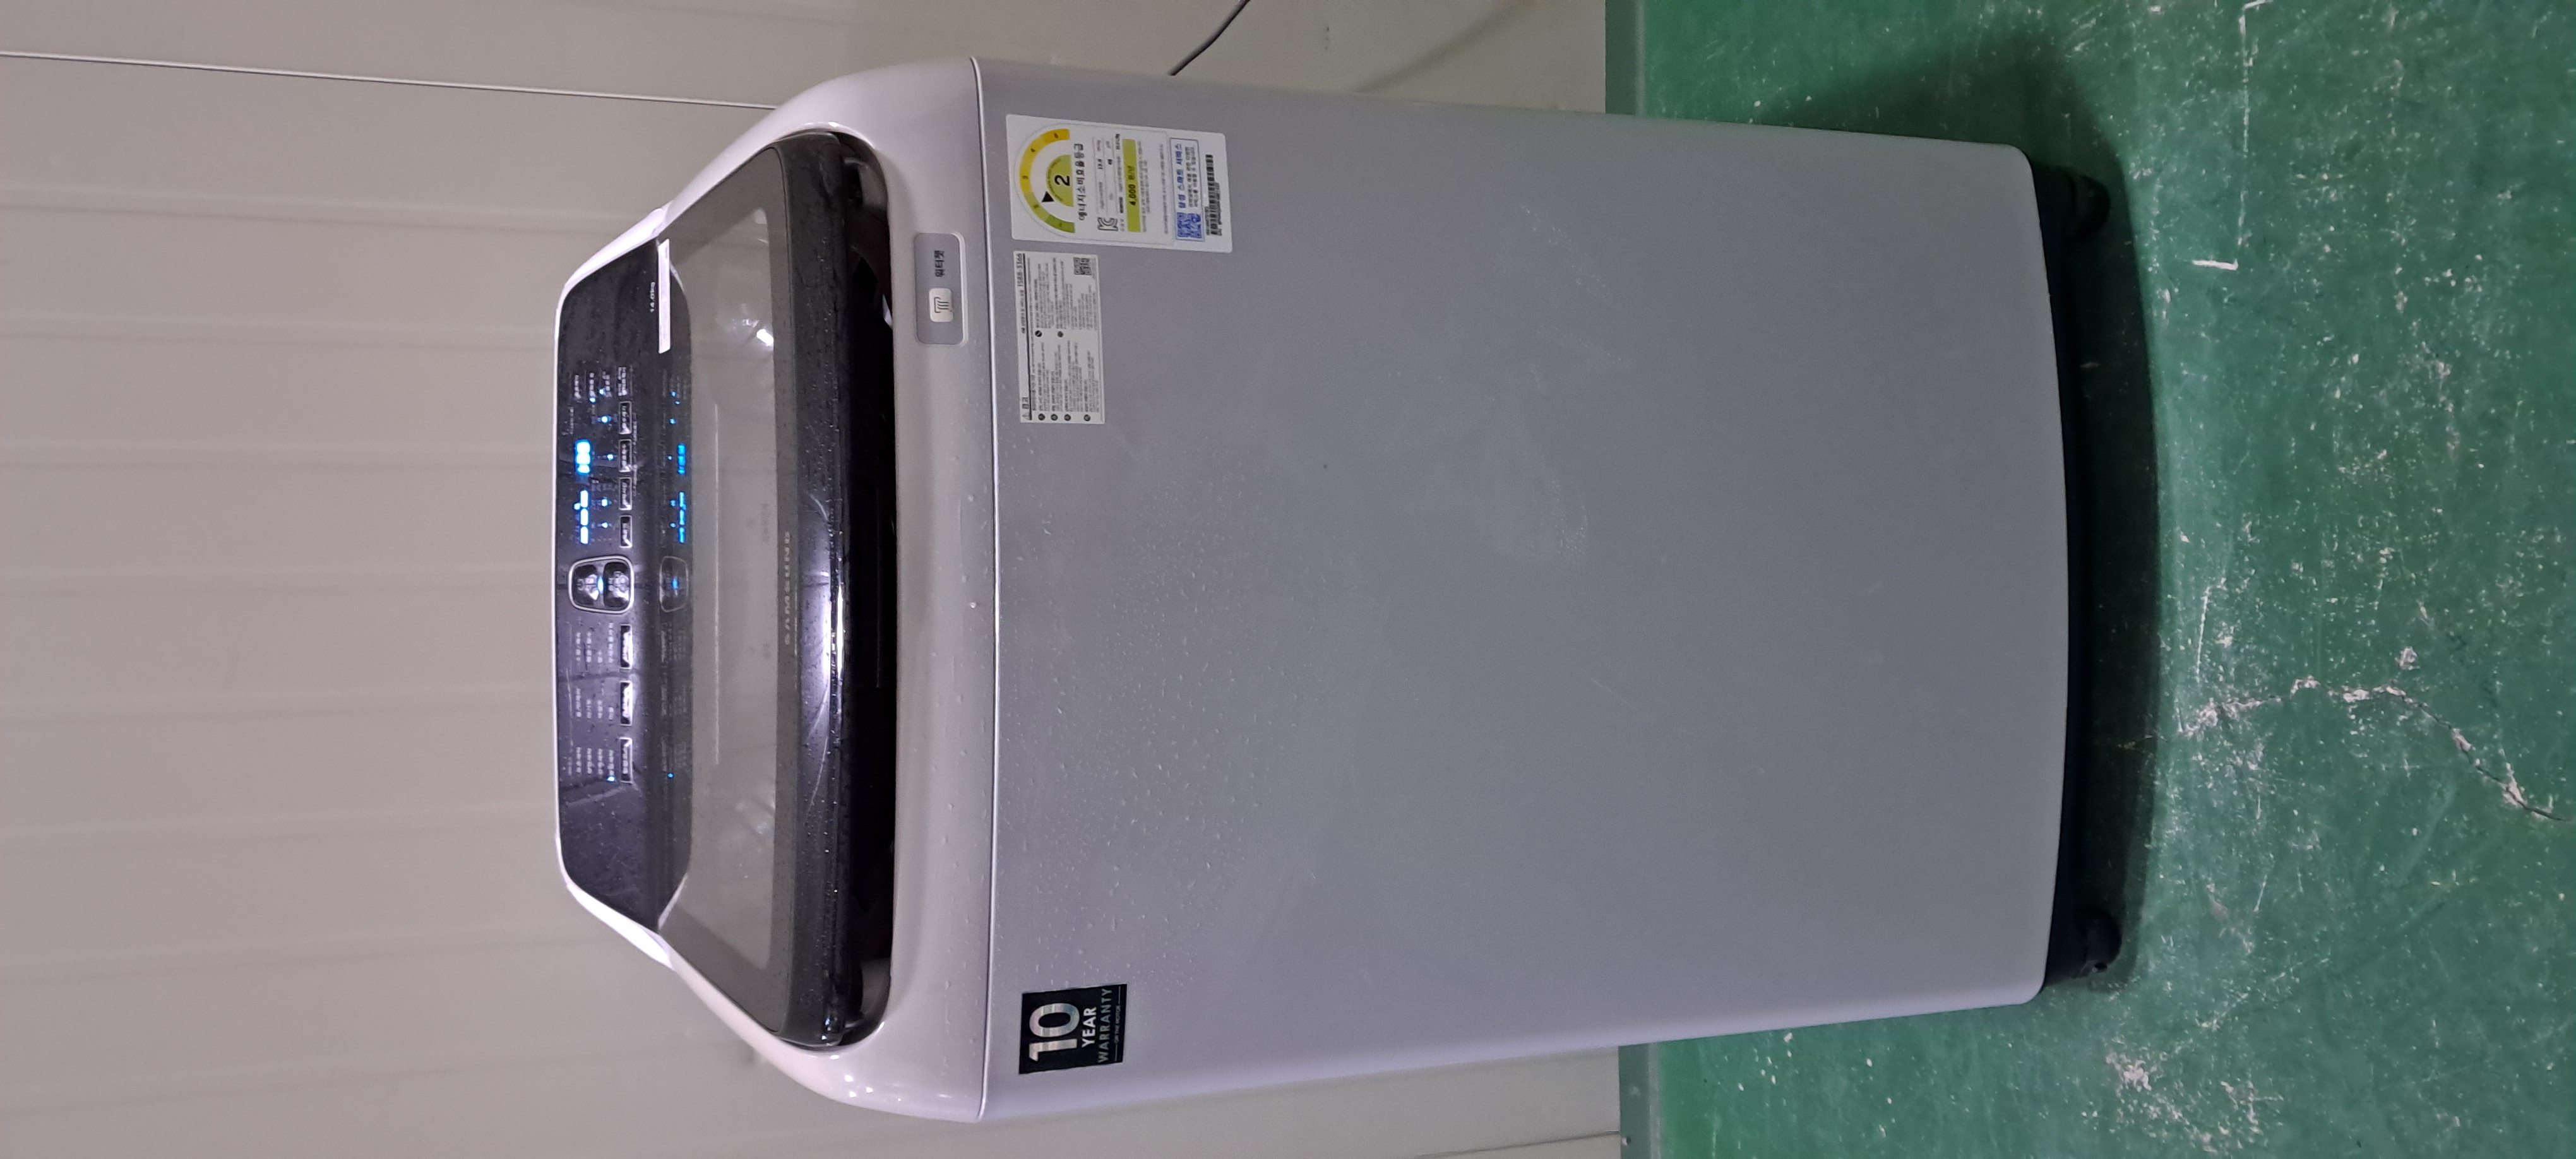 2538 삼성 14KG 통돌이세탁기(메탈그레이)